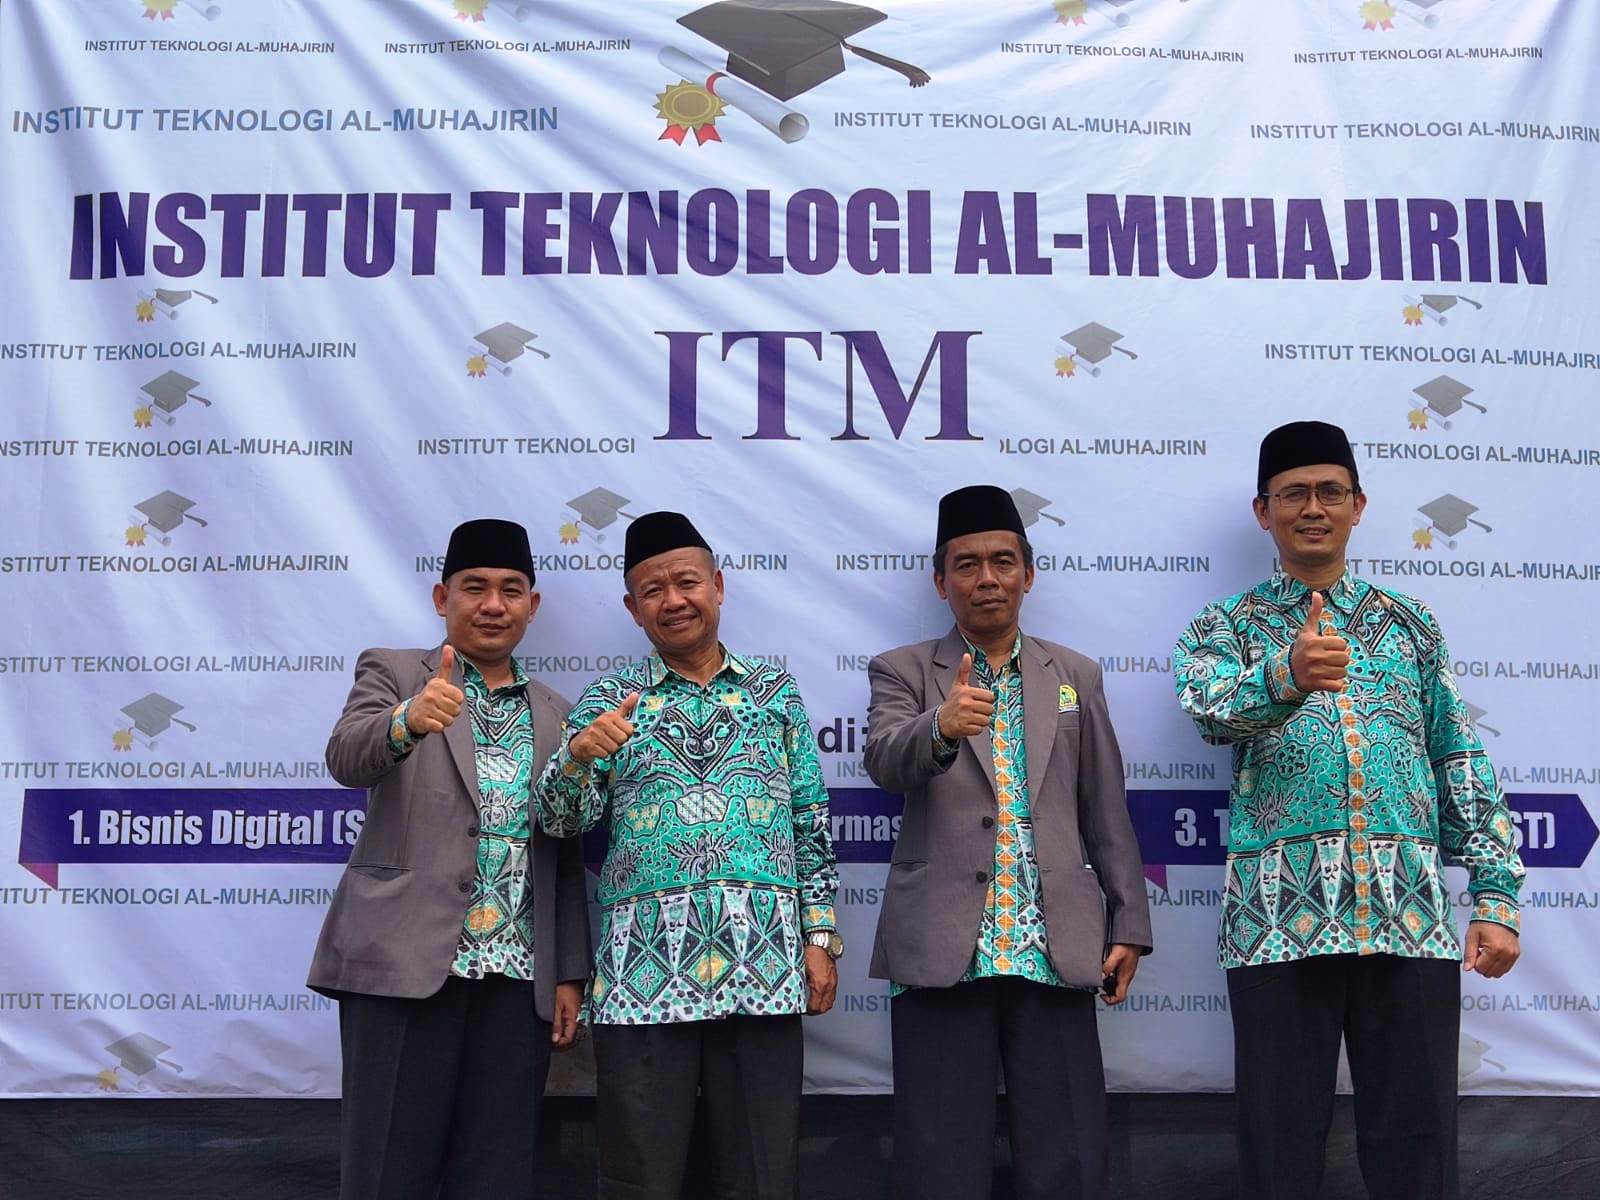 Institut Teknologi Al-Muhajirin Integrasikan Teknologi dan Nilai Islam